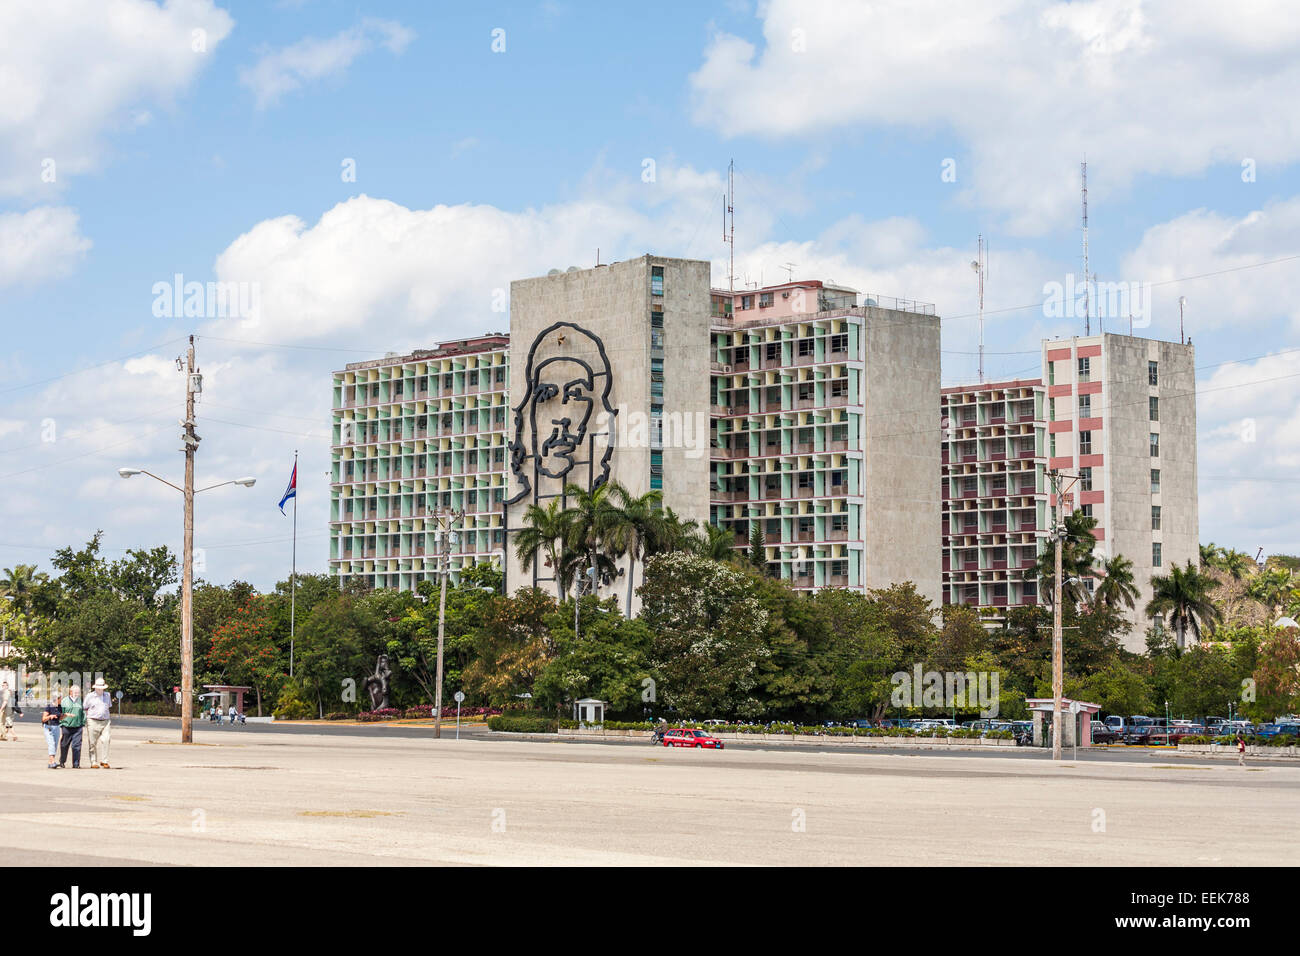 Edificio del Ministerio del Interior: imagen de Che Guevara y el lema "Hasta la victoria siempre', la Plaza de la Revolución, La Habana, Cuba Foto de stock